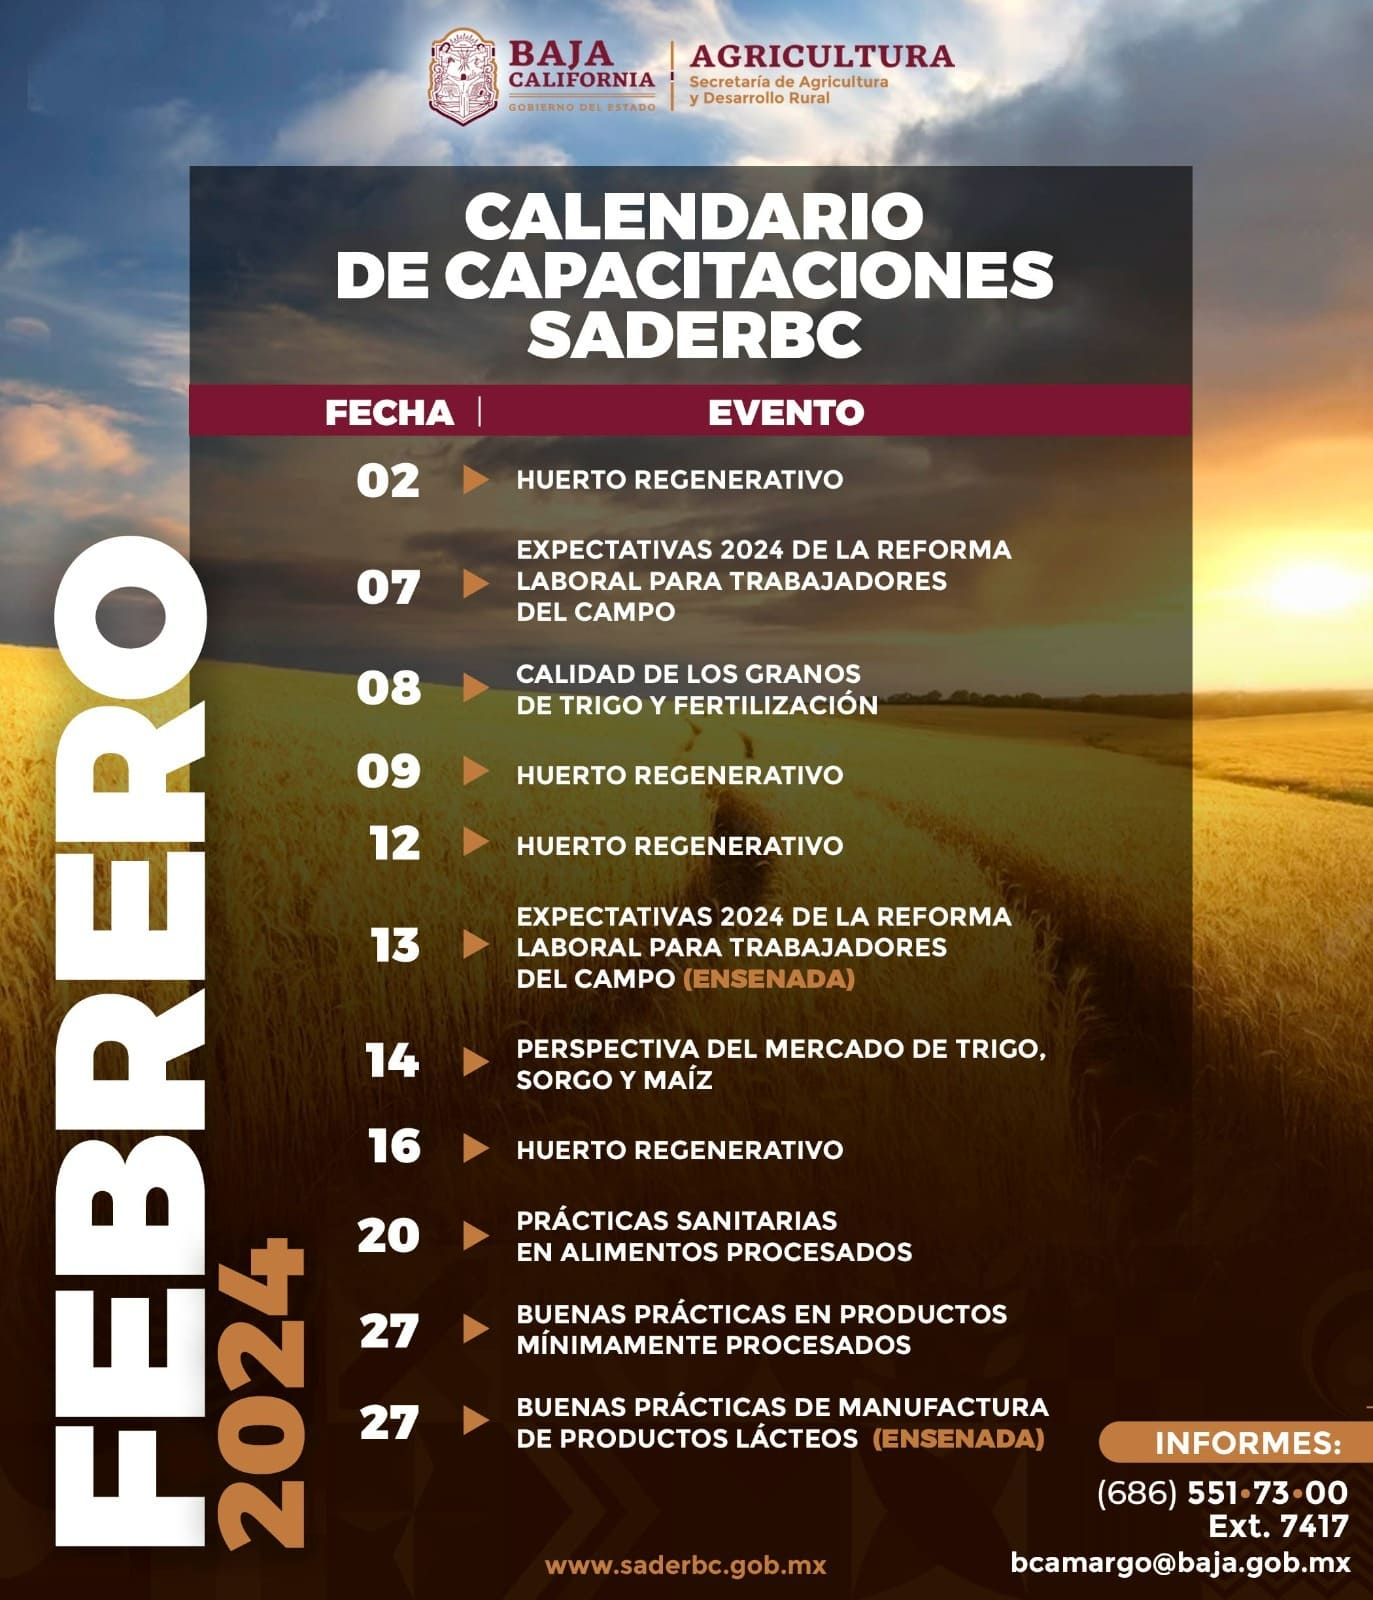 PRESENTA SADERBC CALENDARIO DE CAPACITACIONES PARA FEBRERO 2024